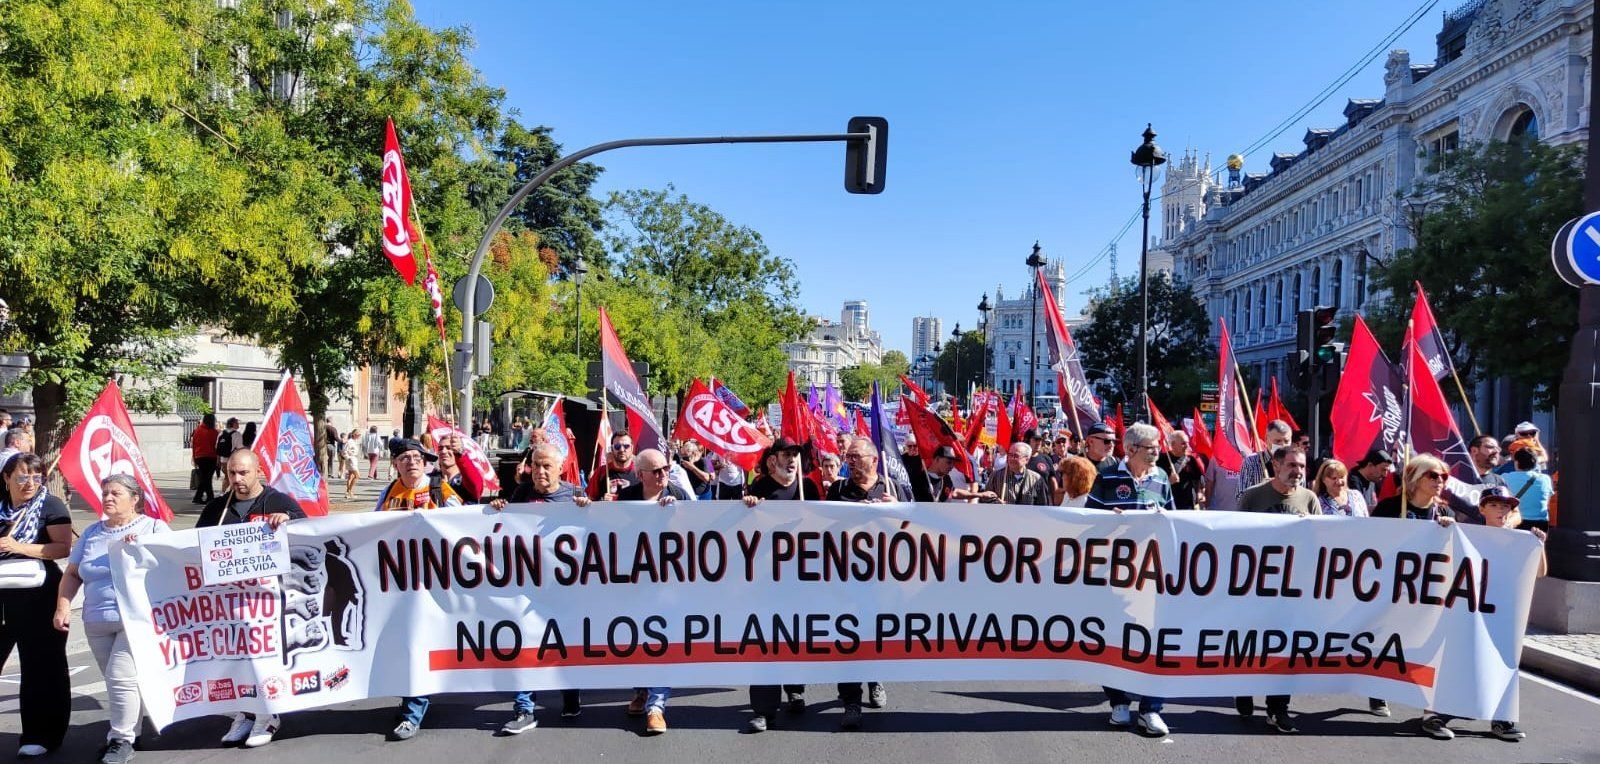 Pensionistas manifestándose en Madrid para pedir una pensión digna. CGT.